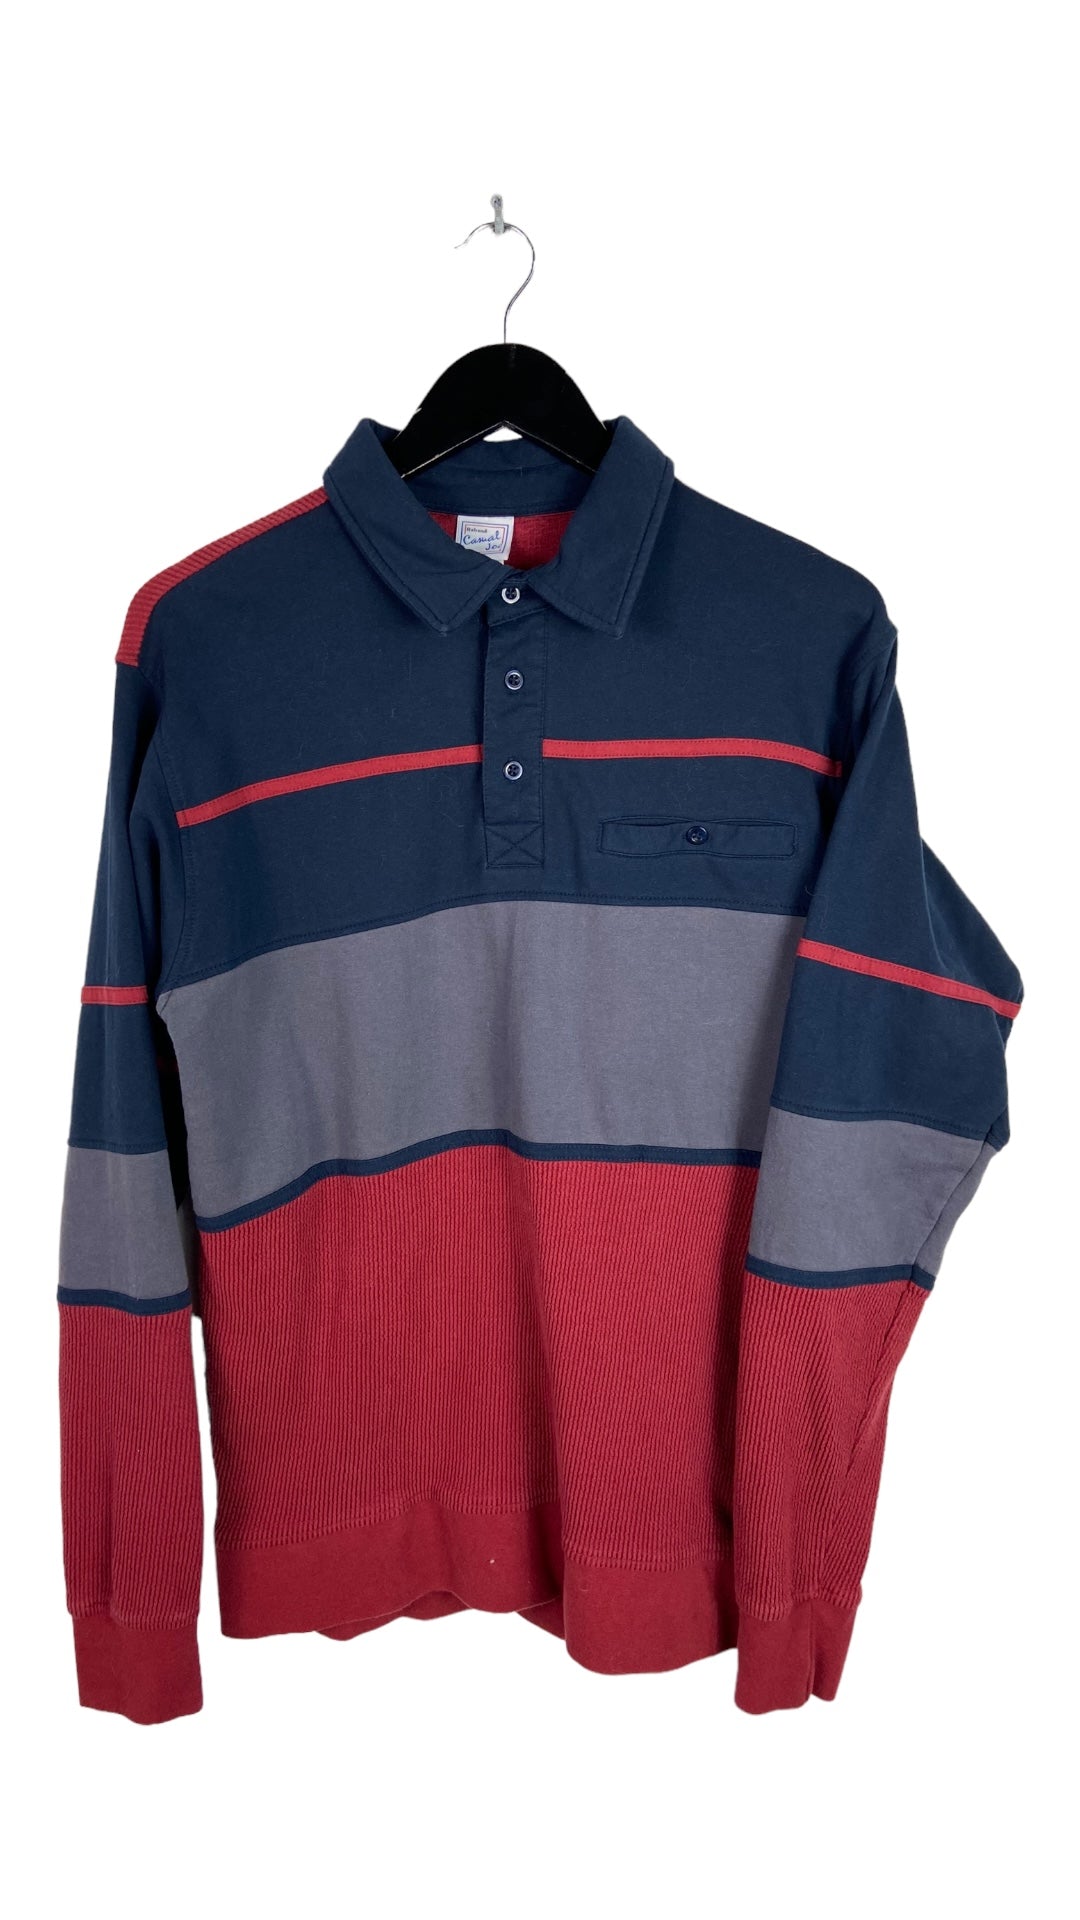 VTG Navy/Red LS Polo Shirt Sz M